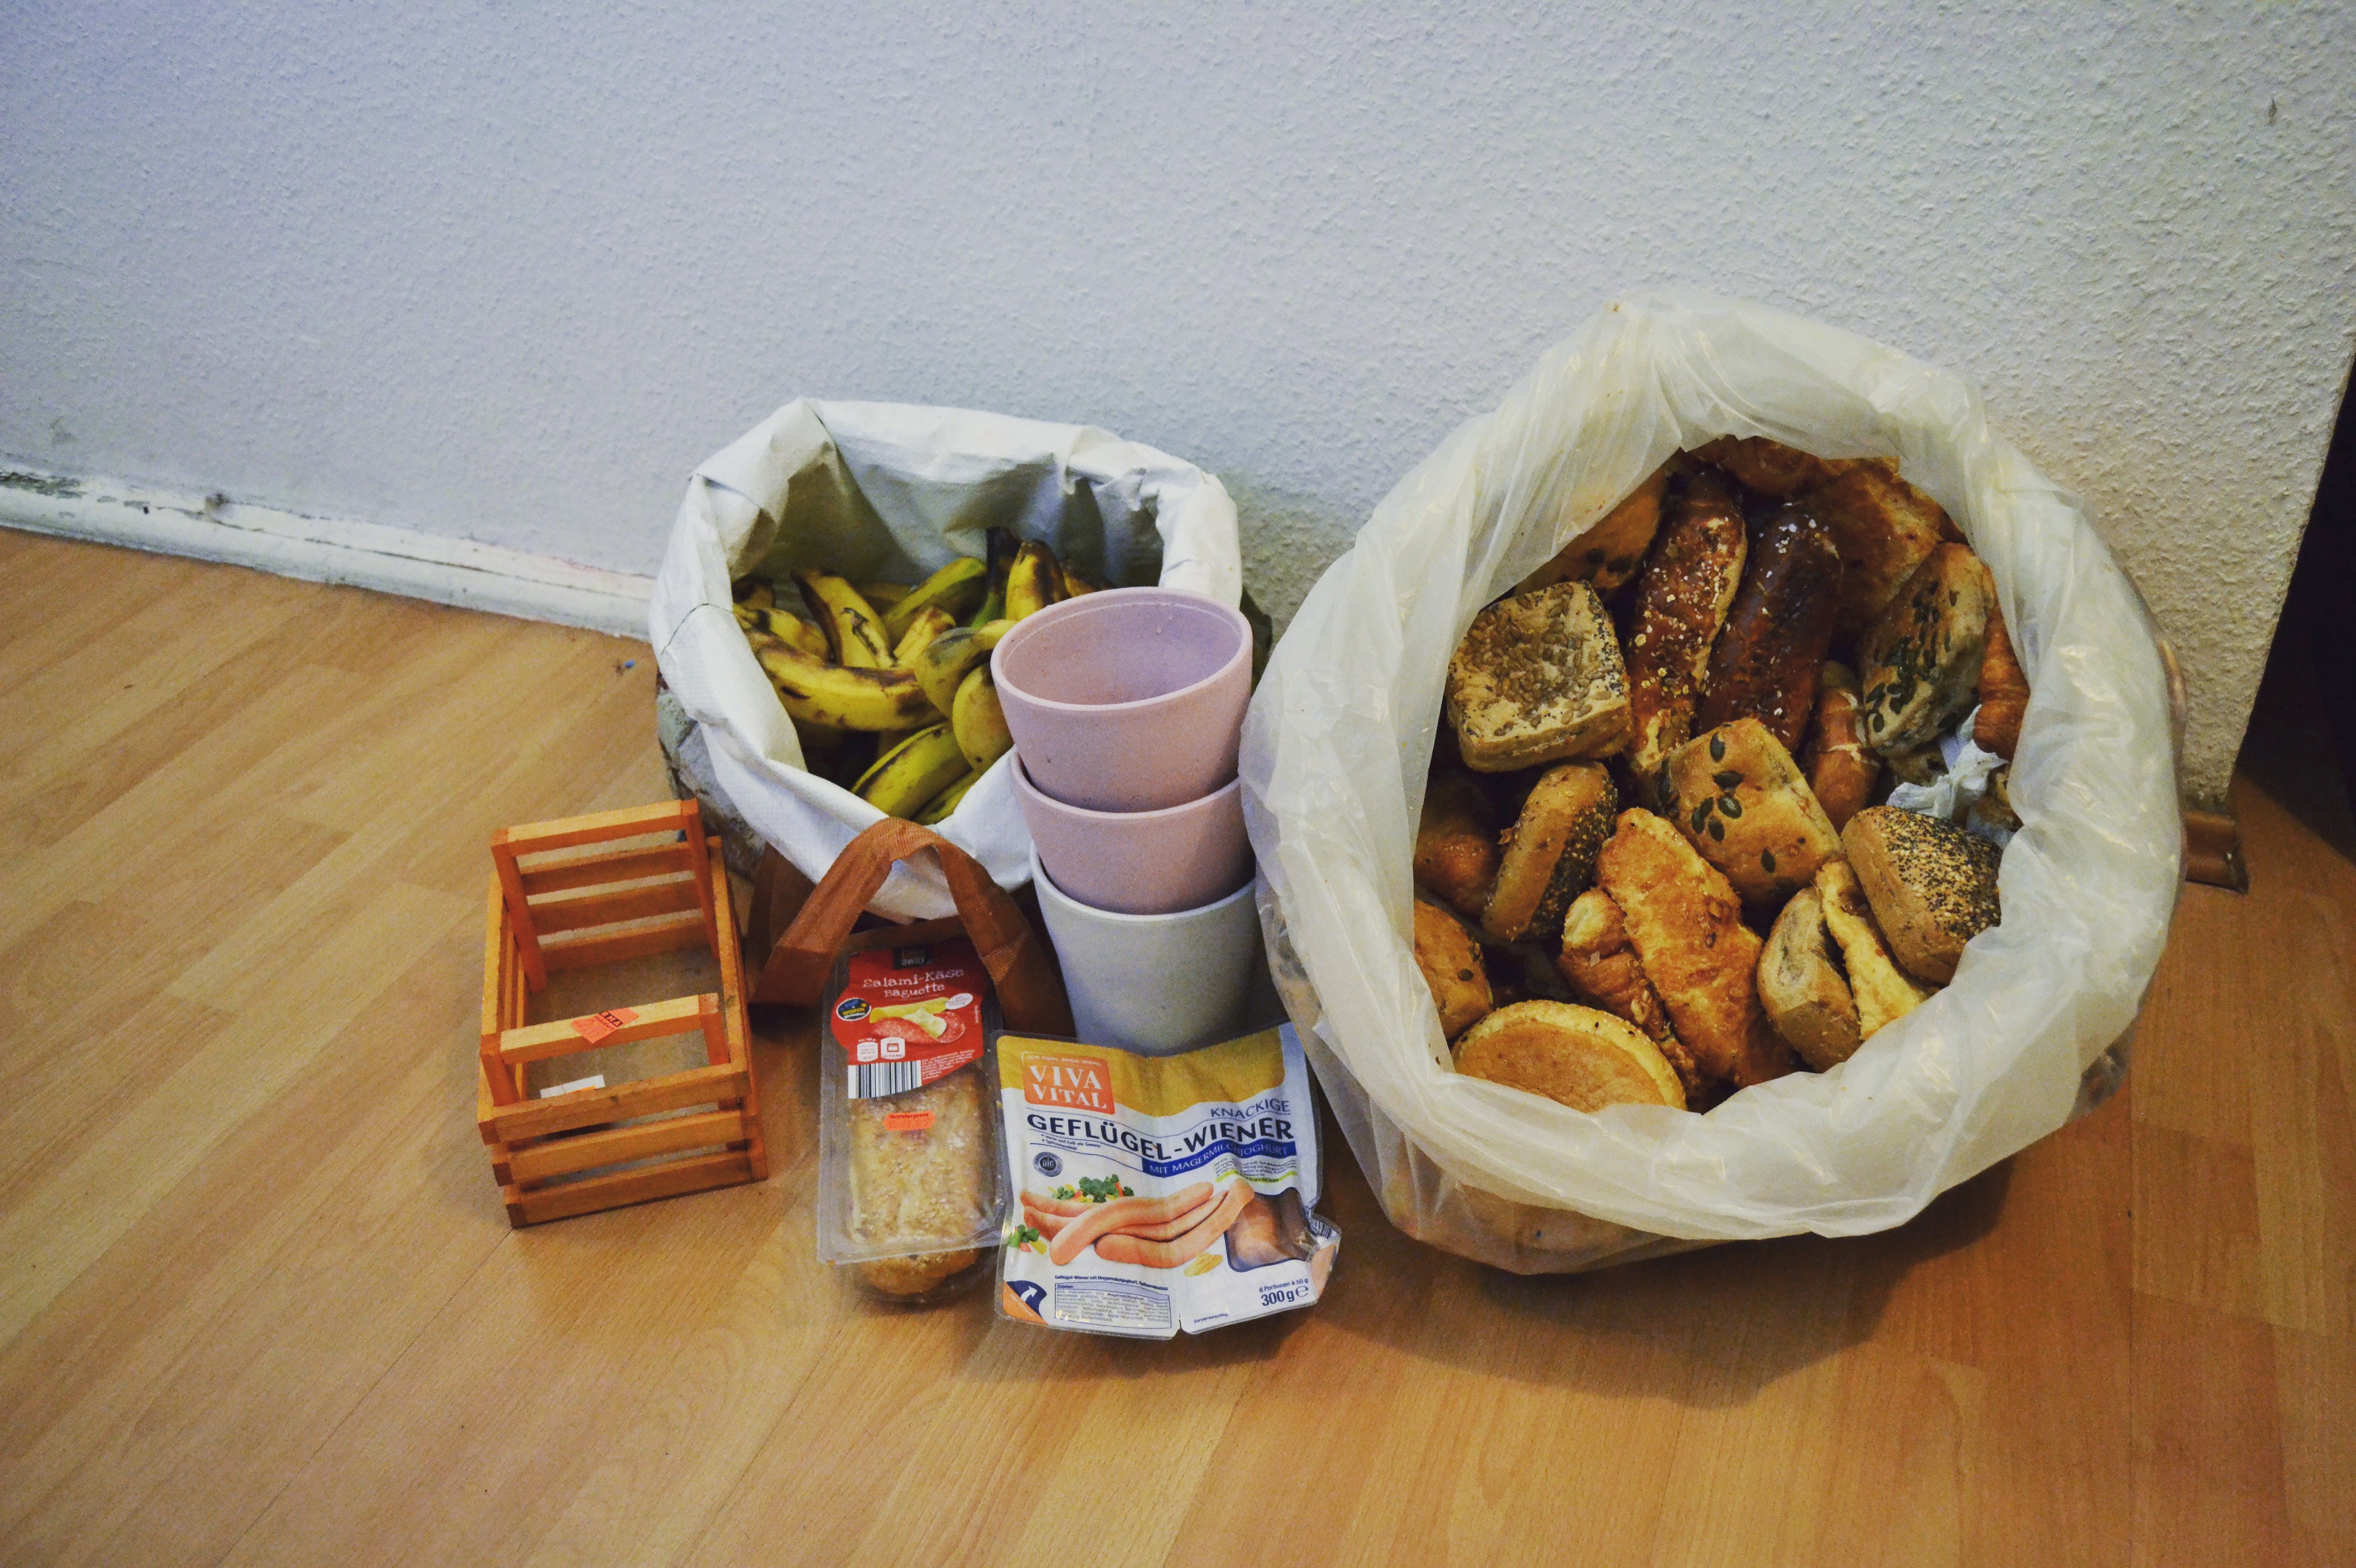 Jeweils eine Tasche voll mit Brot und Bananen ca. 5 - 10 Kg, Vasen, und einige Fertiggerichte die weggeworfen wurden.